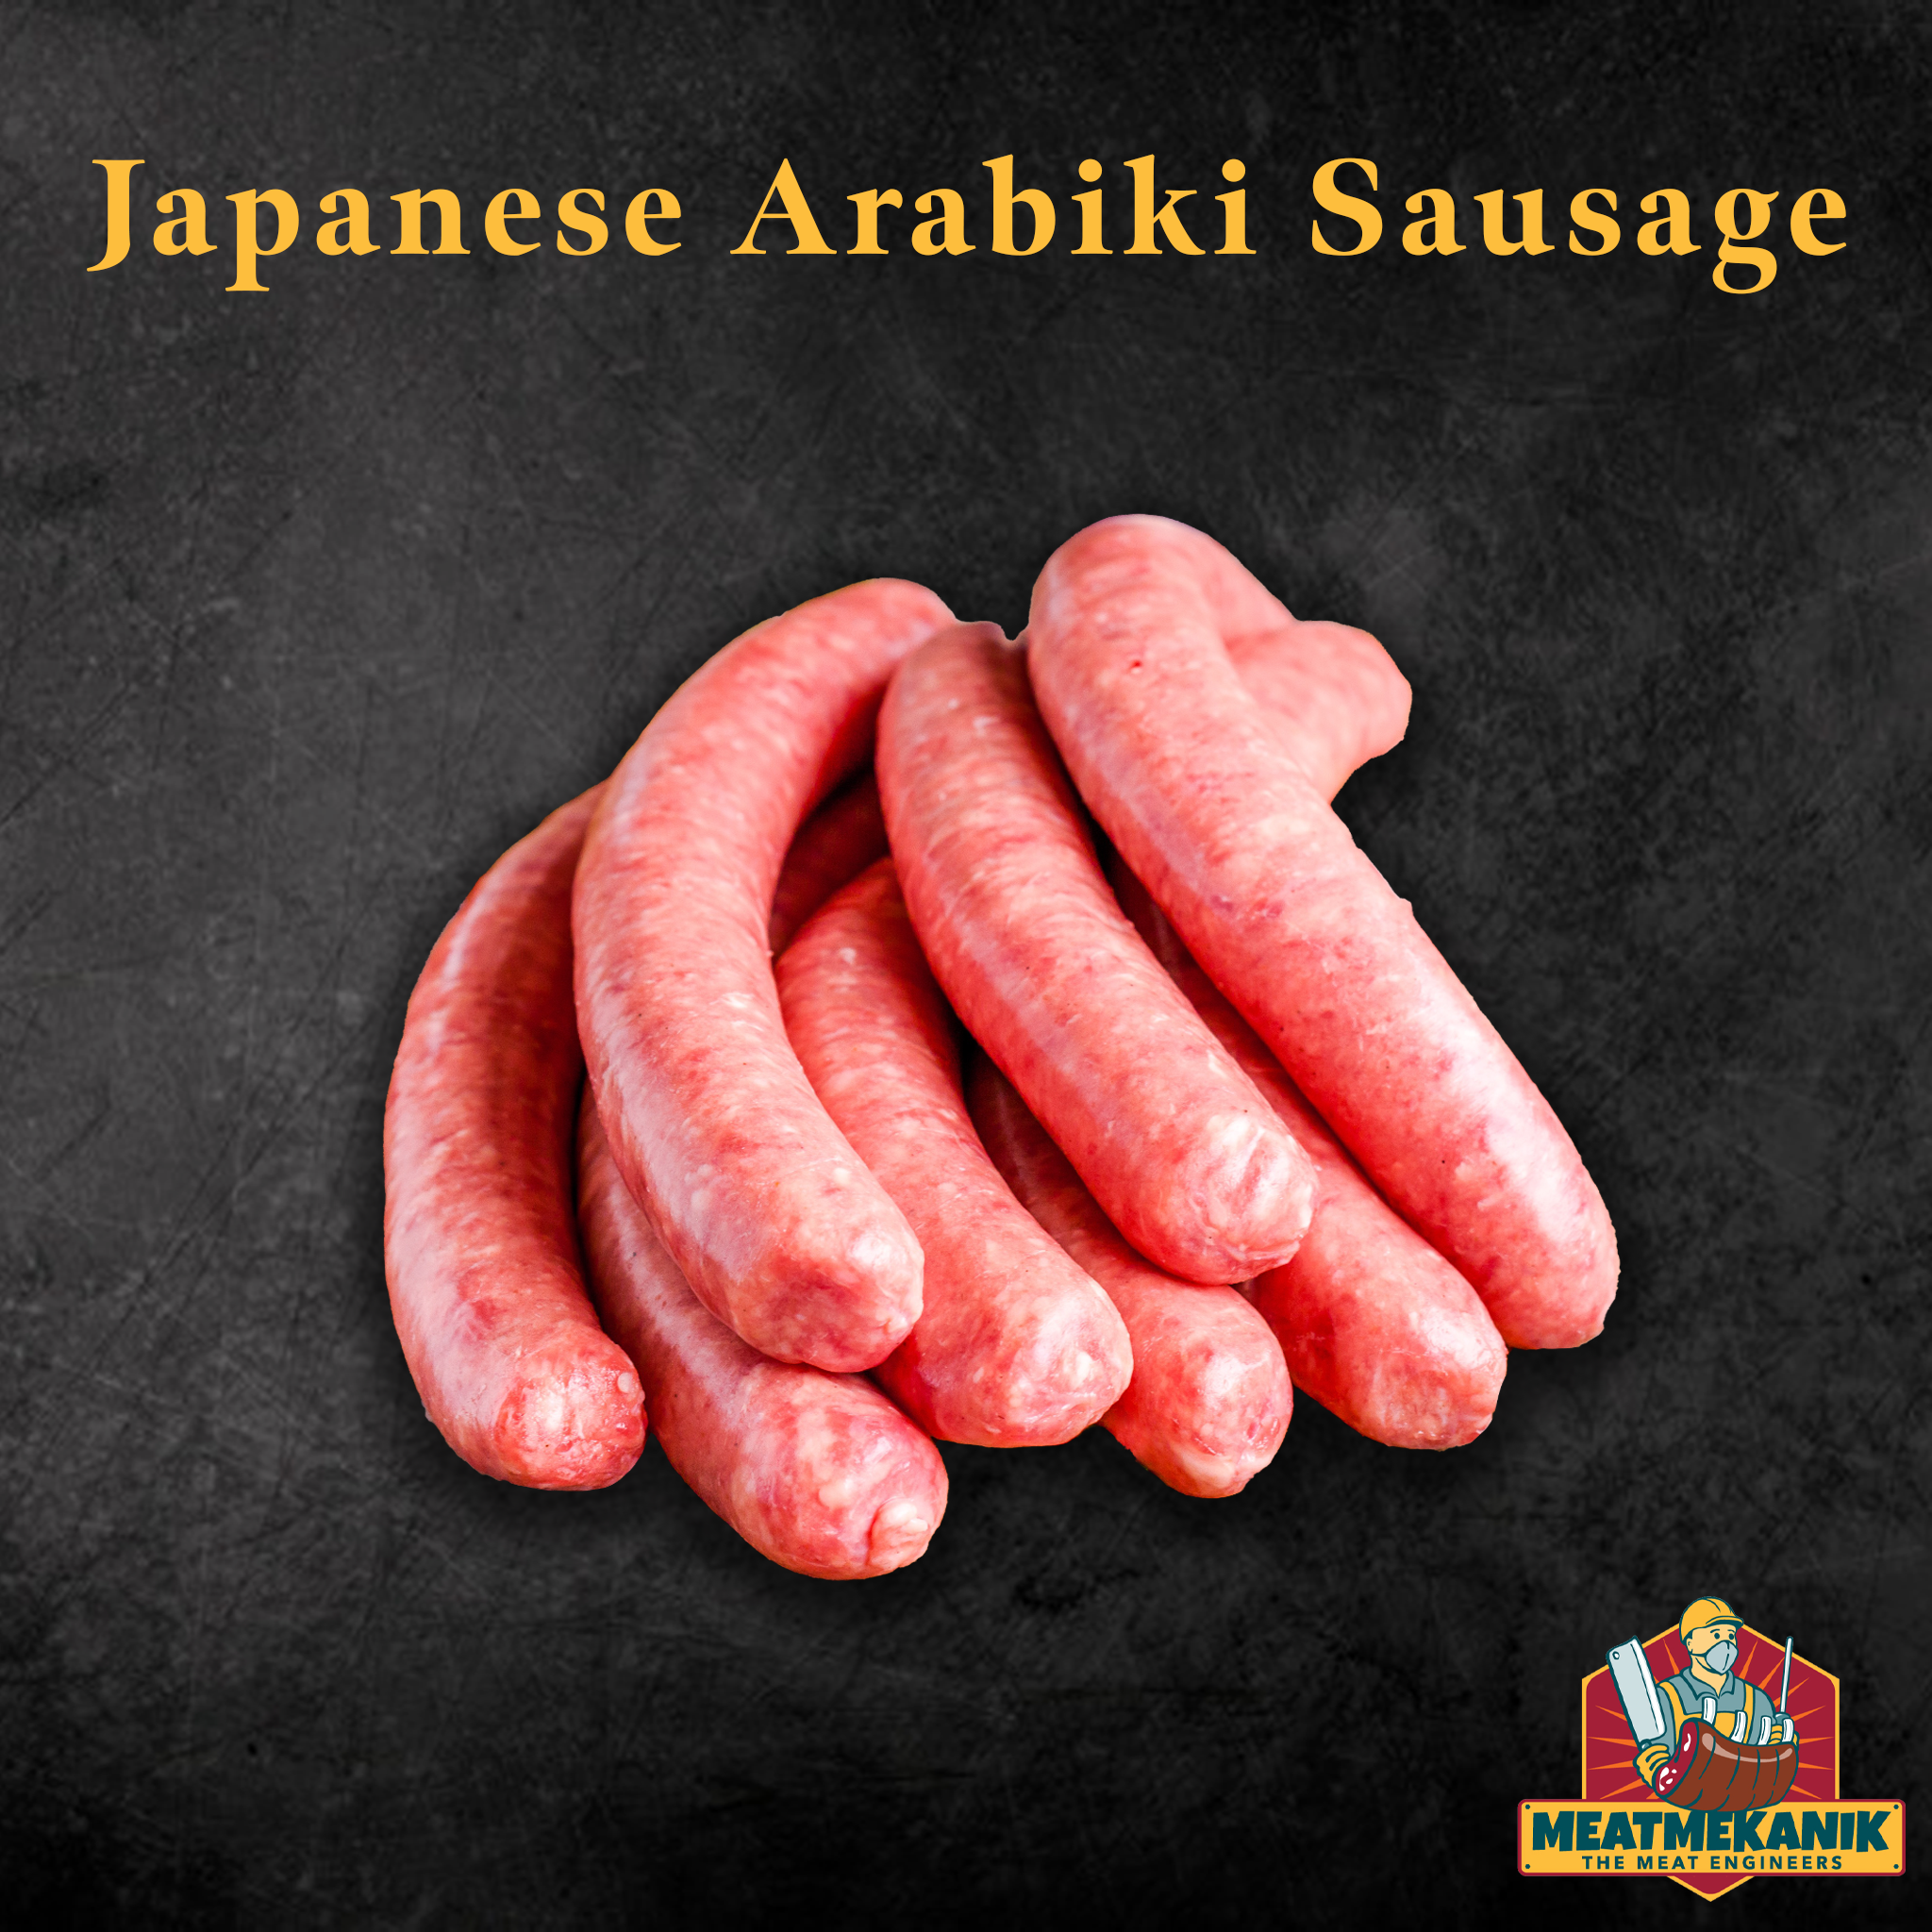 Japanese Arabiki Sausage - Meat Mekanik